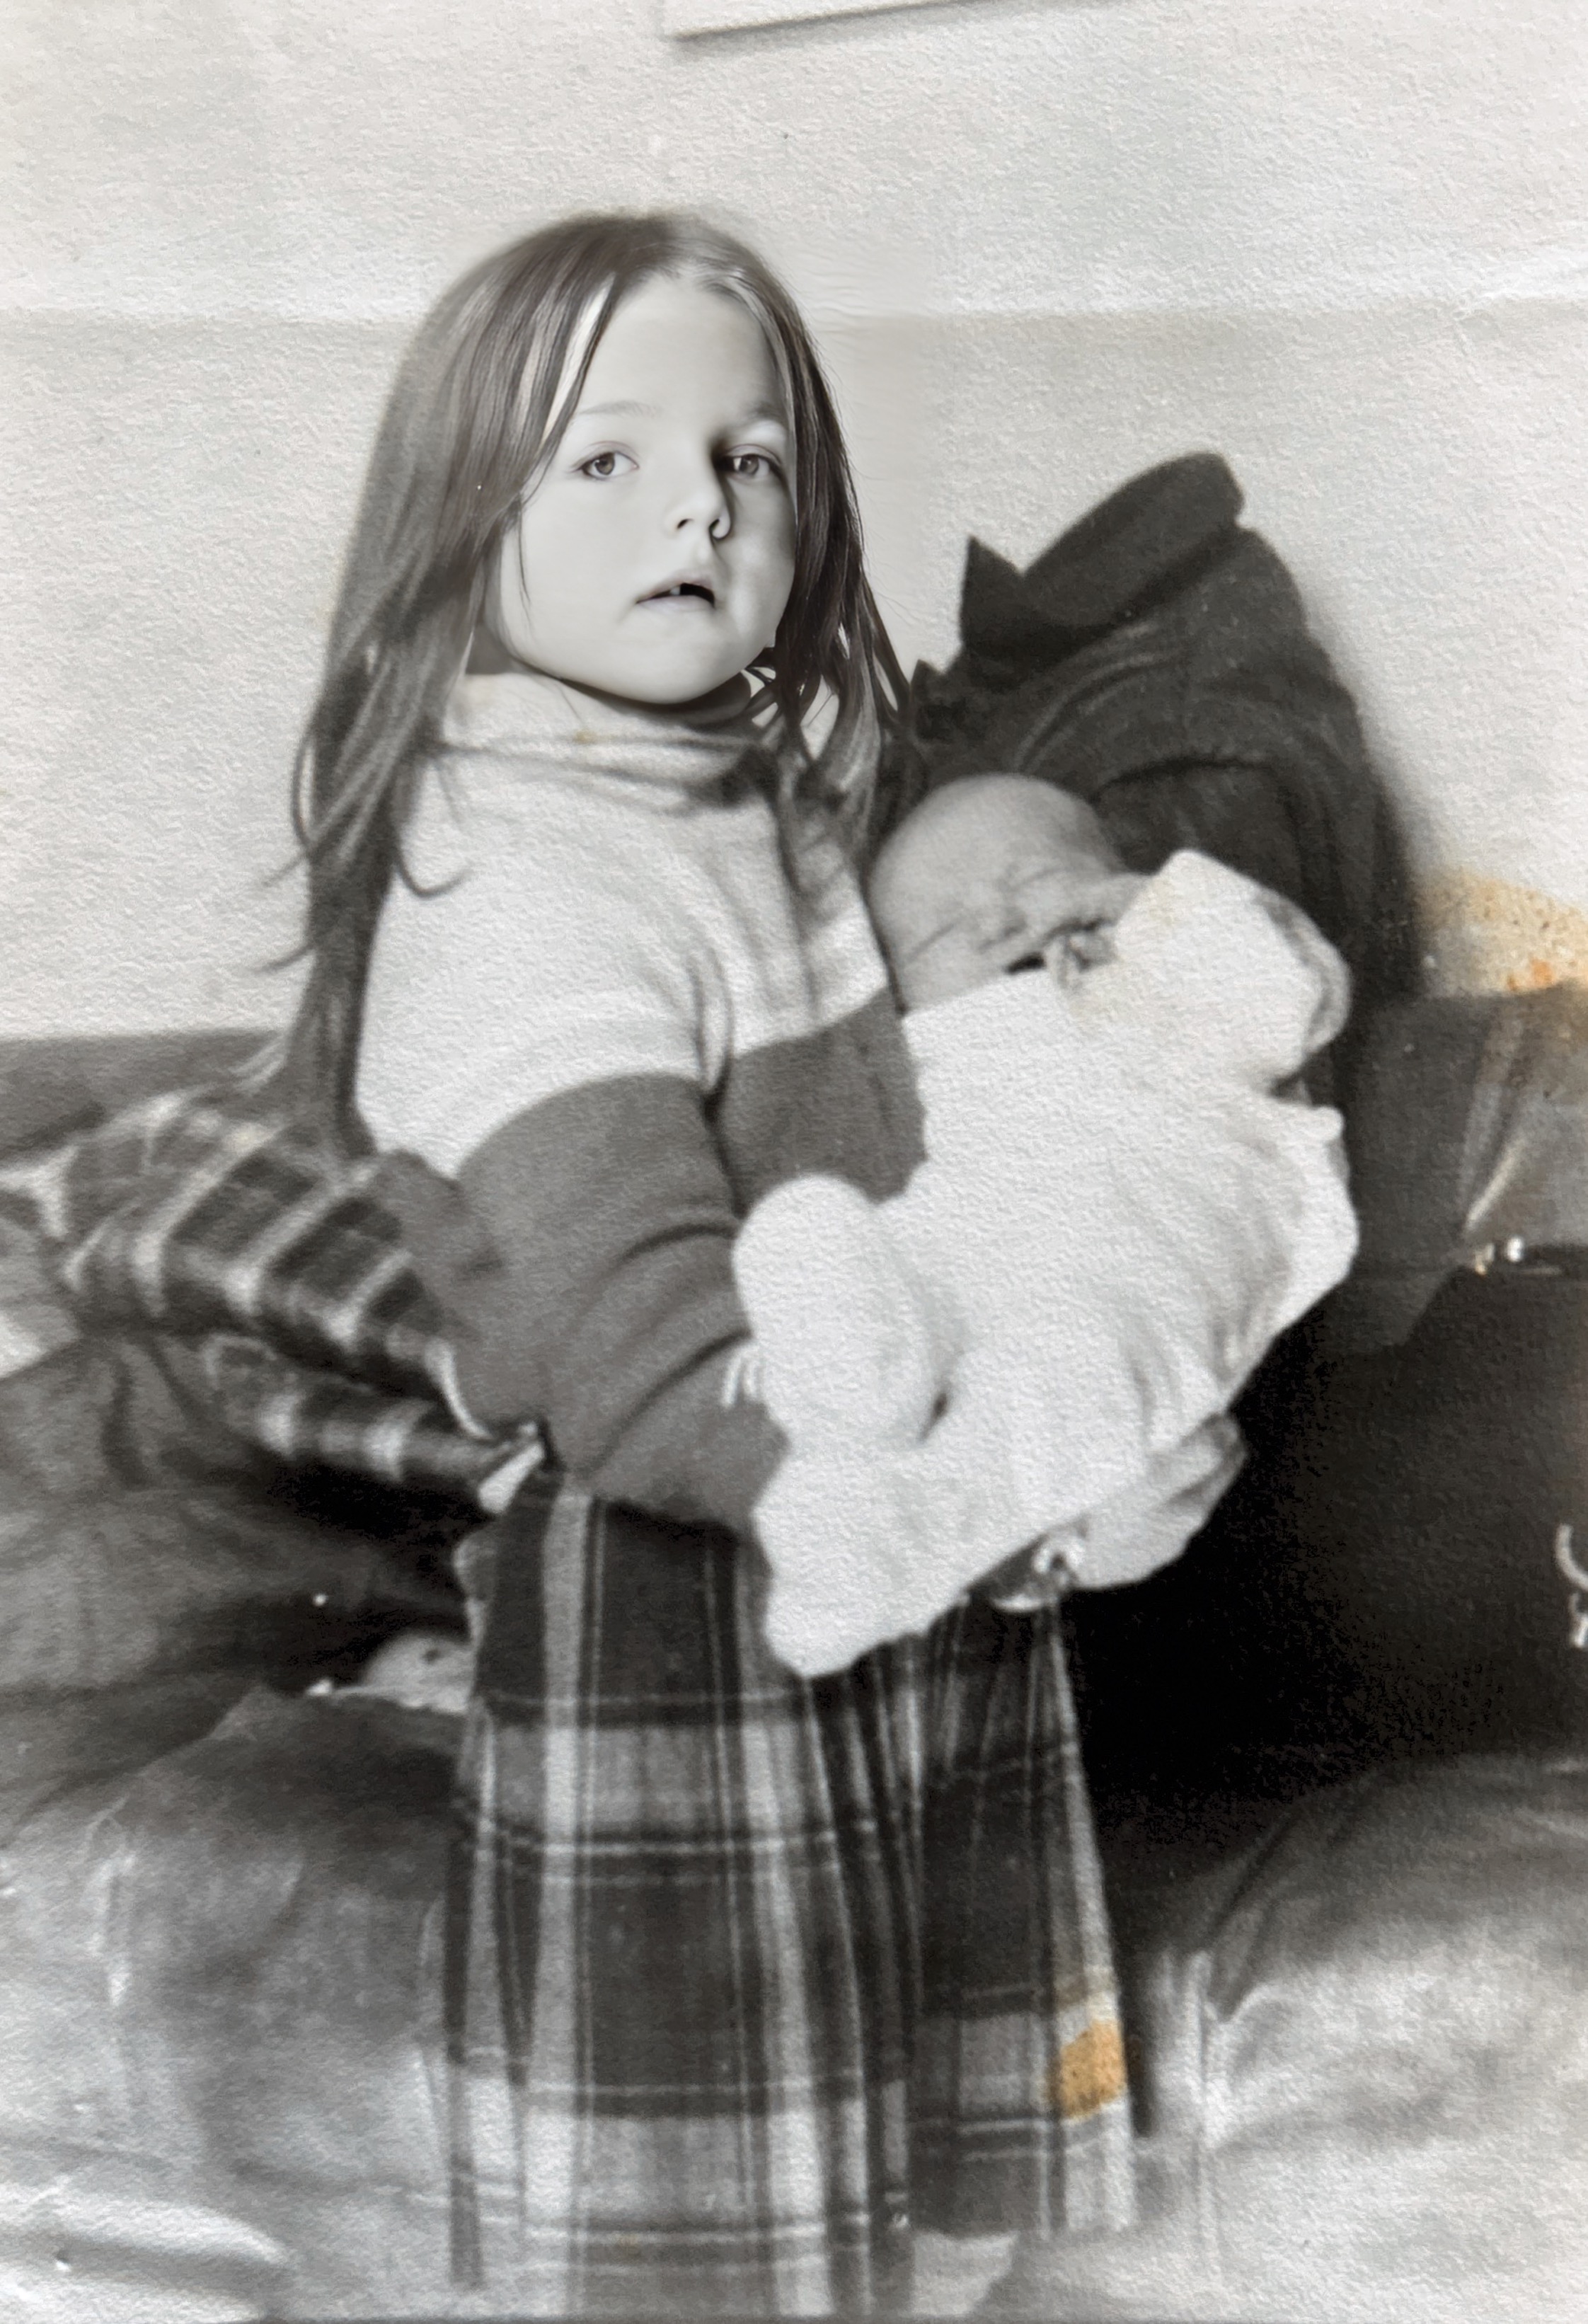 Pau con su hermanita en brazos. Año 1982-83.